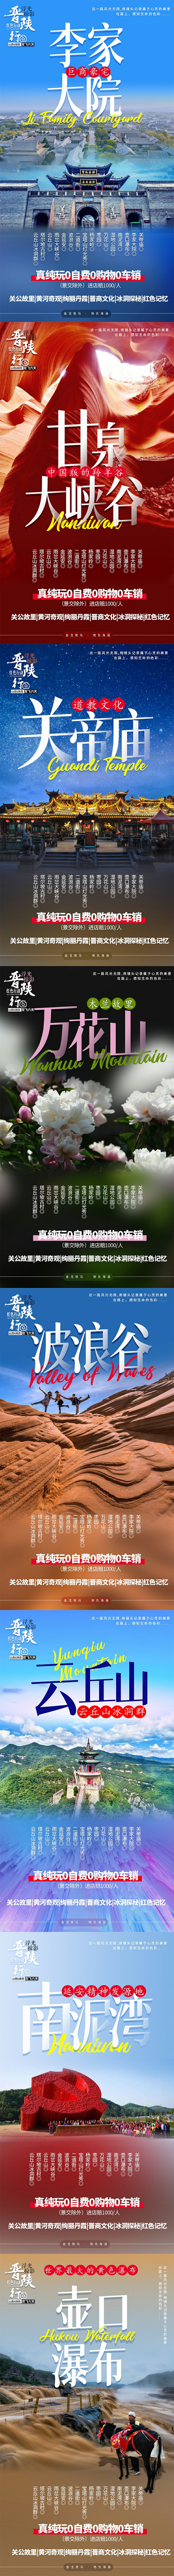 西安旅游海报psd广告设计素材海报模板免费下载